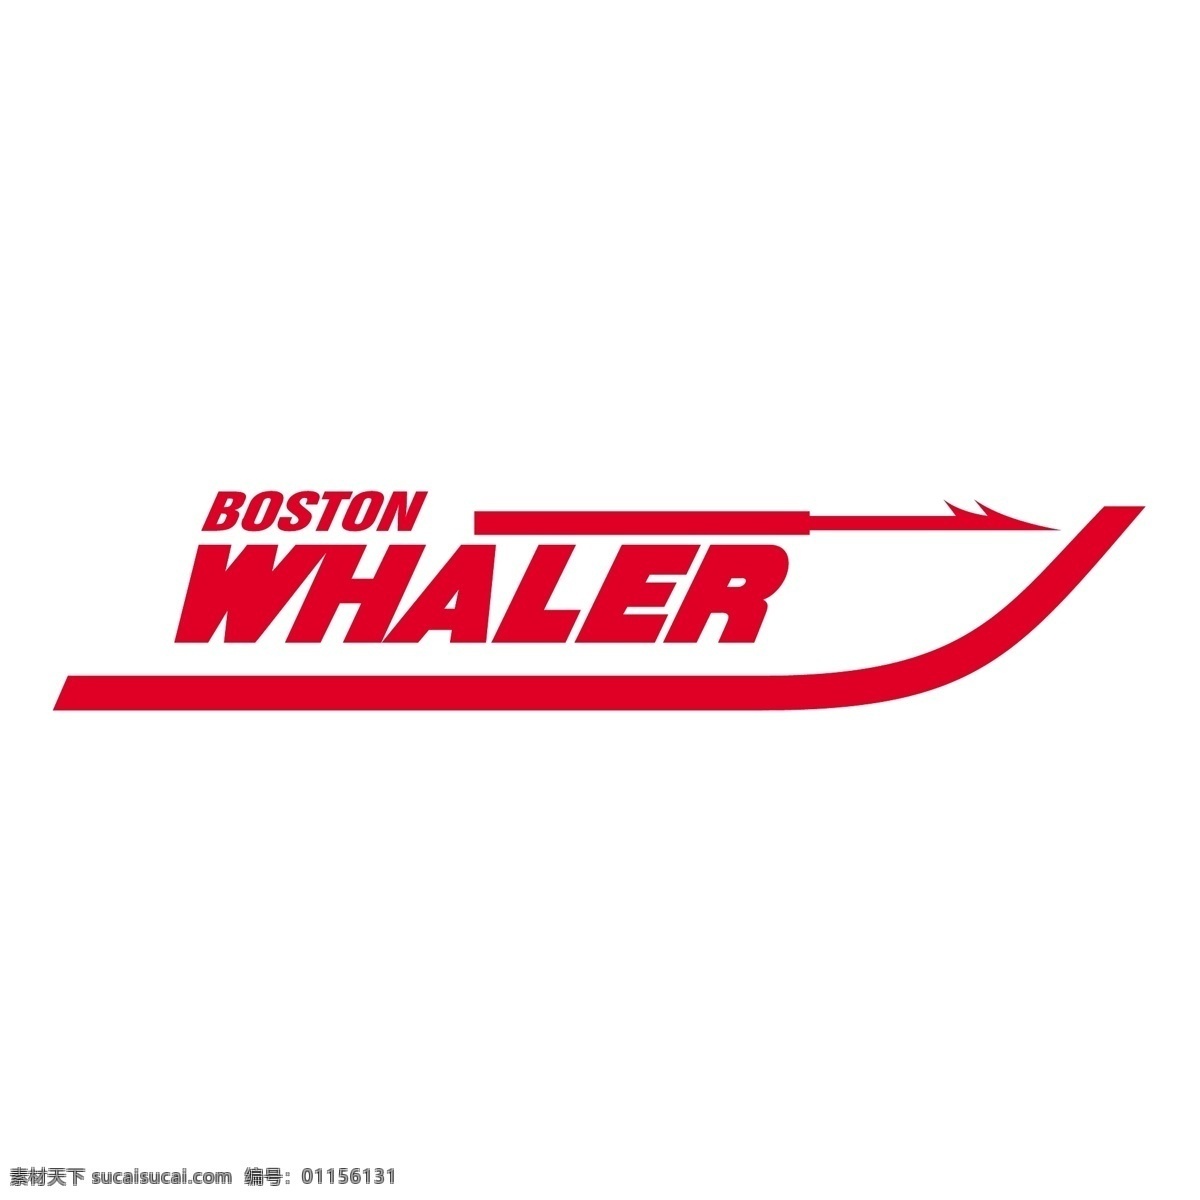 捕鲸船 波士顿 红色